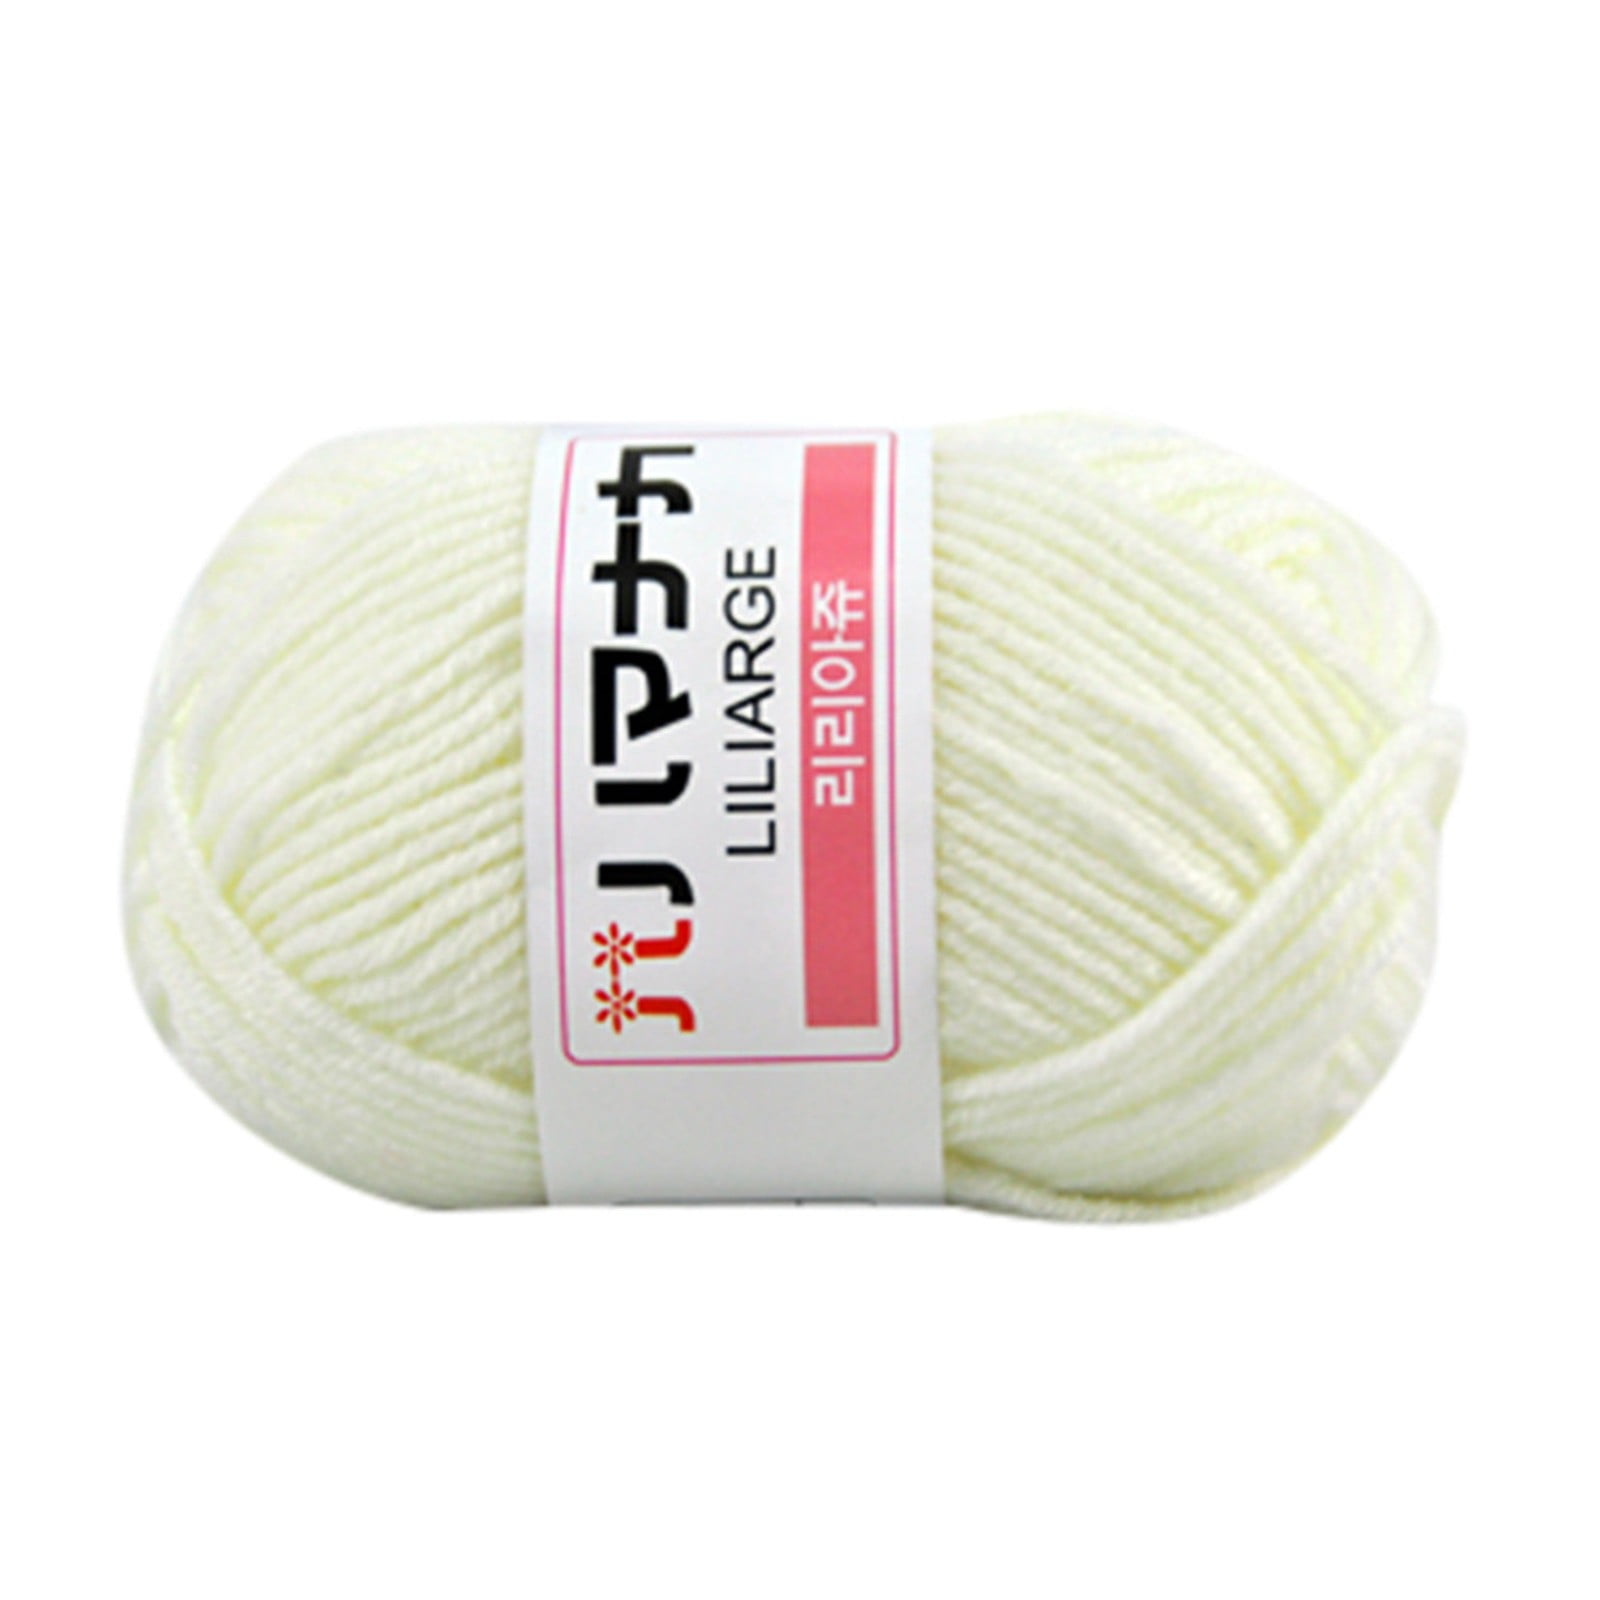 Veki Knitting Milk Crochet 1PC Hand Cotton Cotton Blended Knitting Colorful  Home Textiles Dpn Knitting Needles Set 